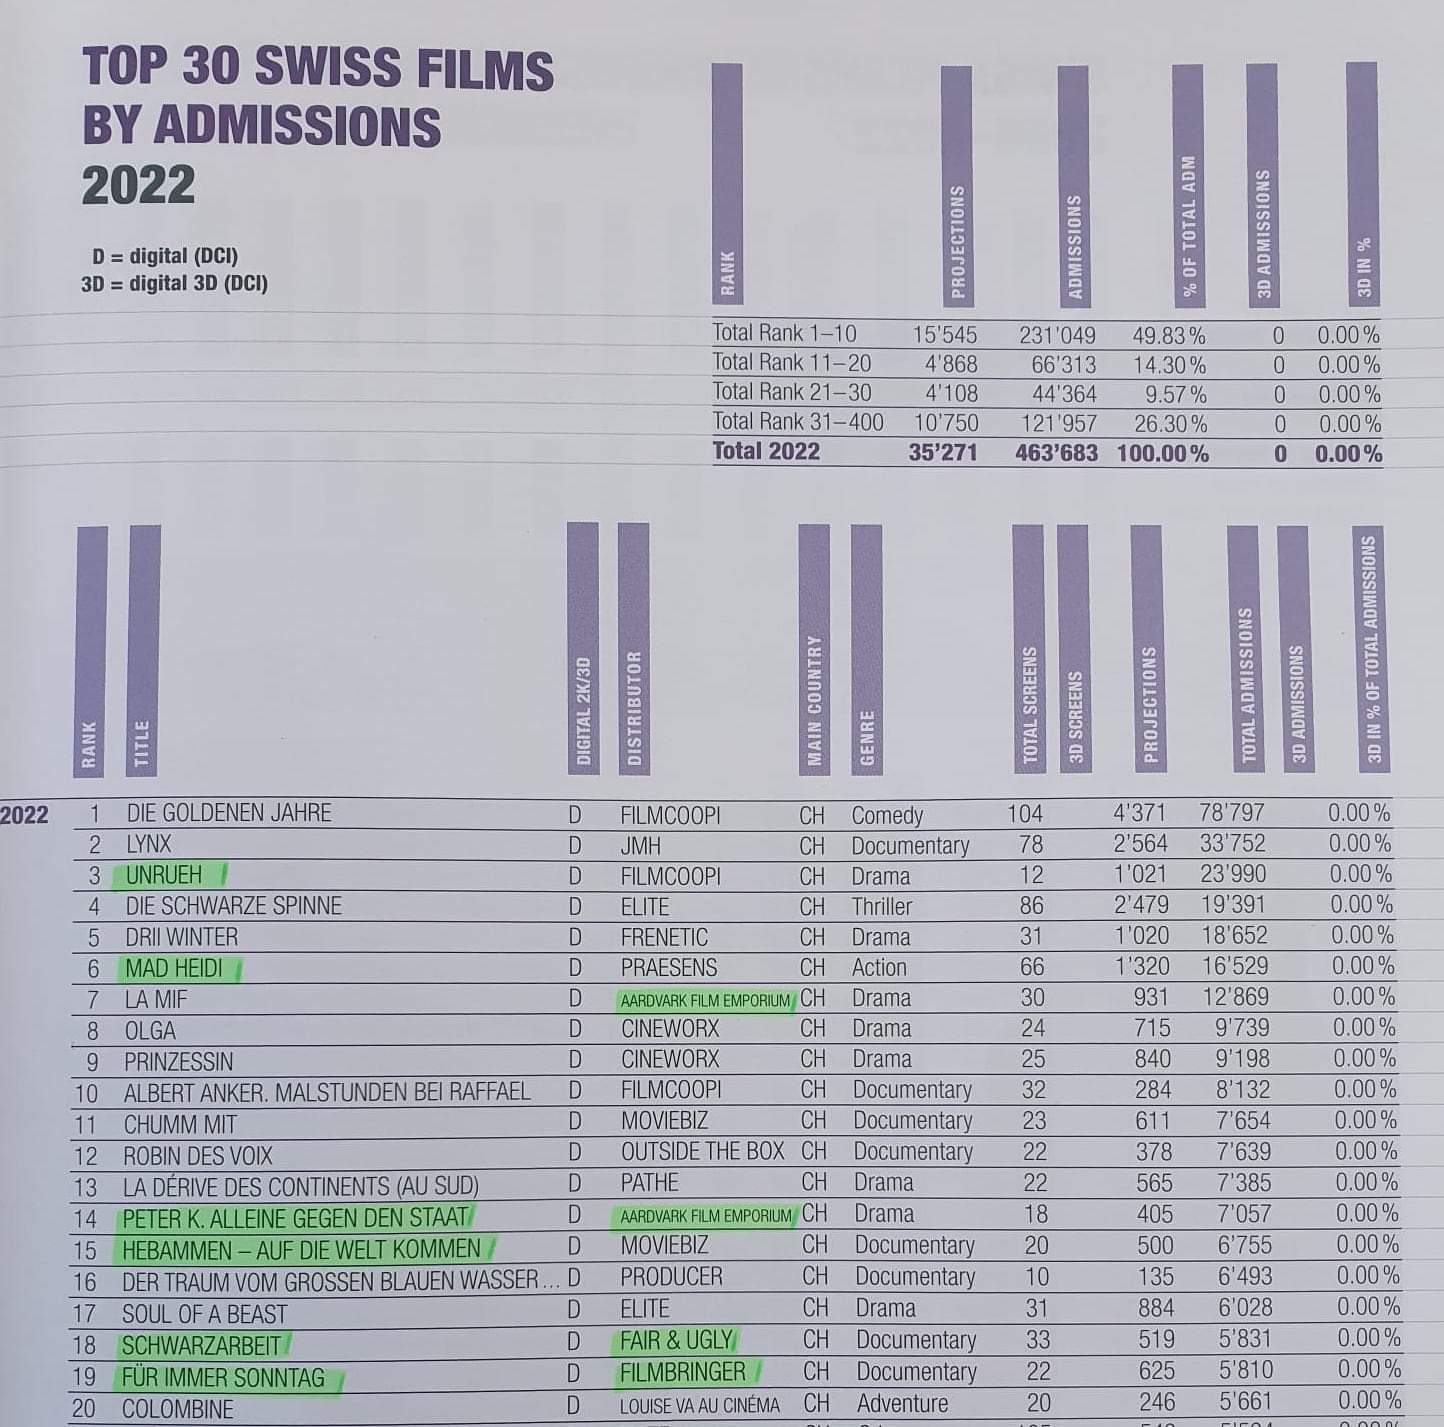 Die Statistik📈von Procinema zeigt: Unter den 20 erfolgreichsten Schweizer Kinofi